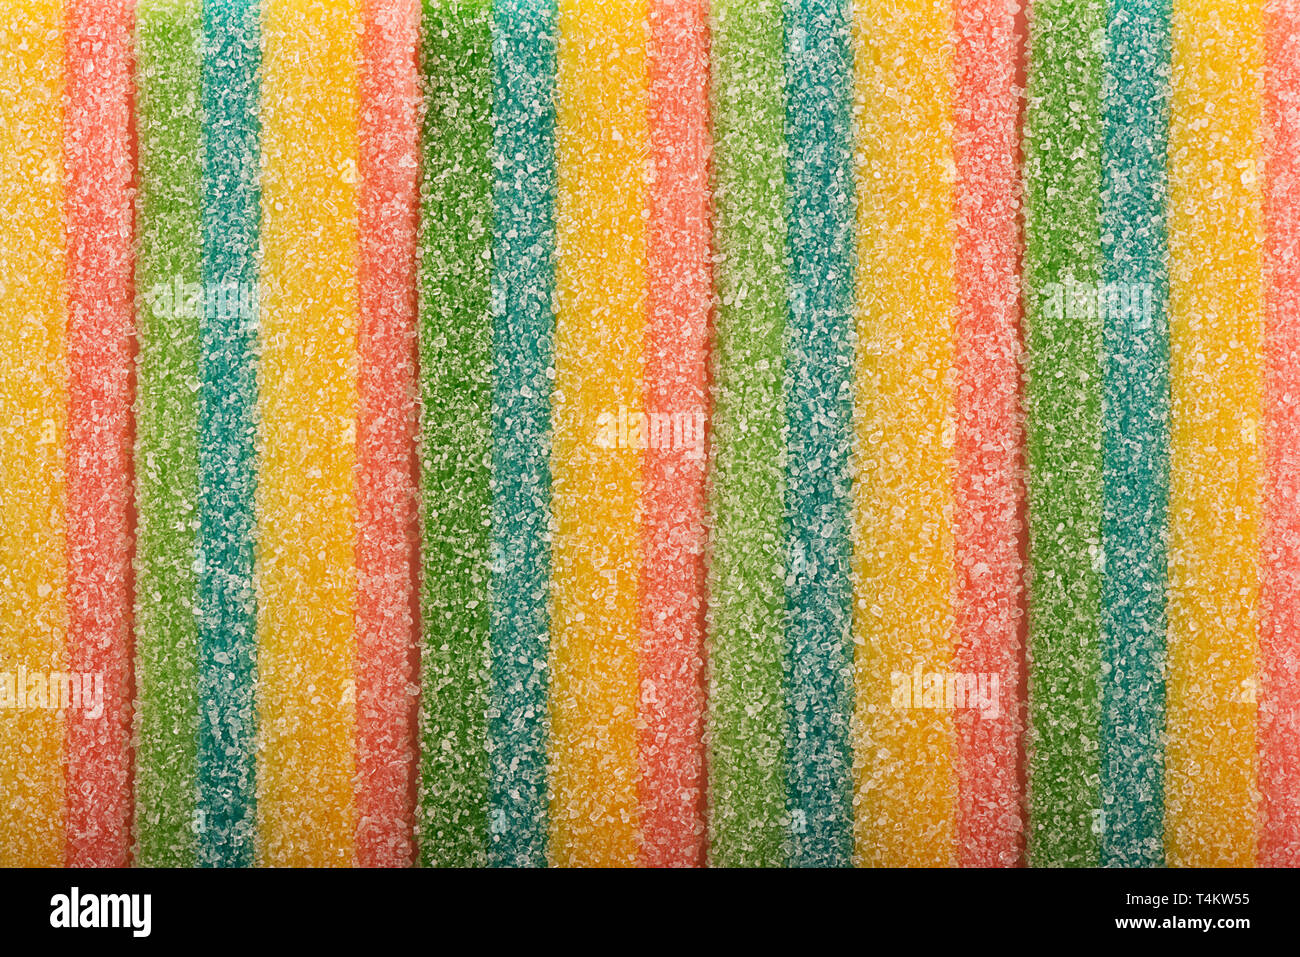 Vista superior en textura de fondo y coloridos caramelos de regaliz. Espacio para copiar texto. Foto de stock